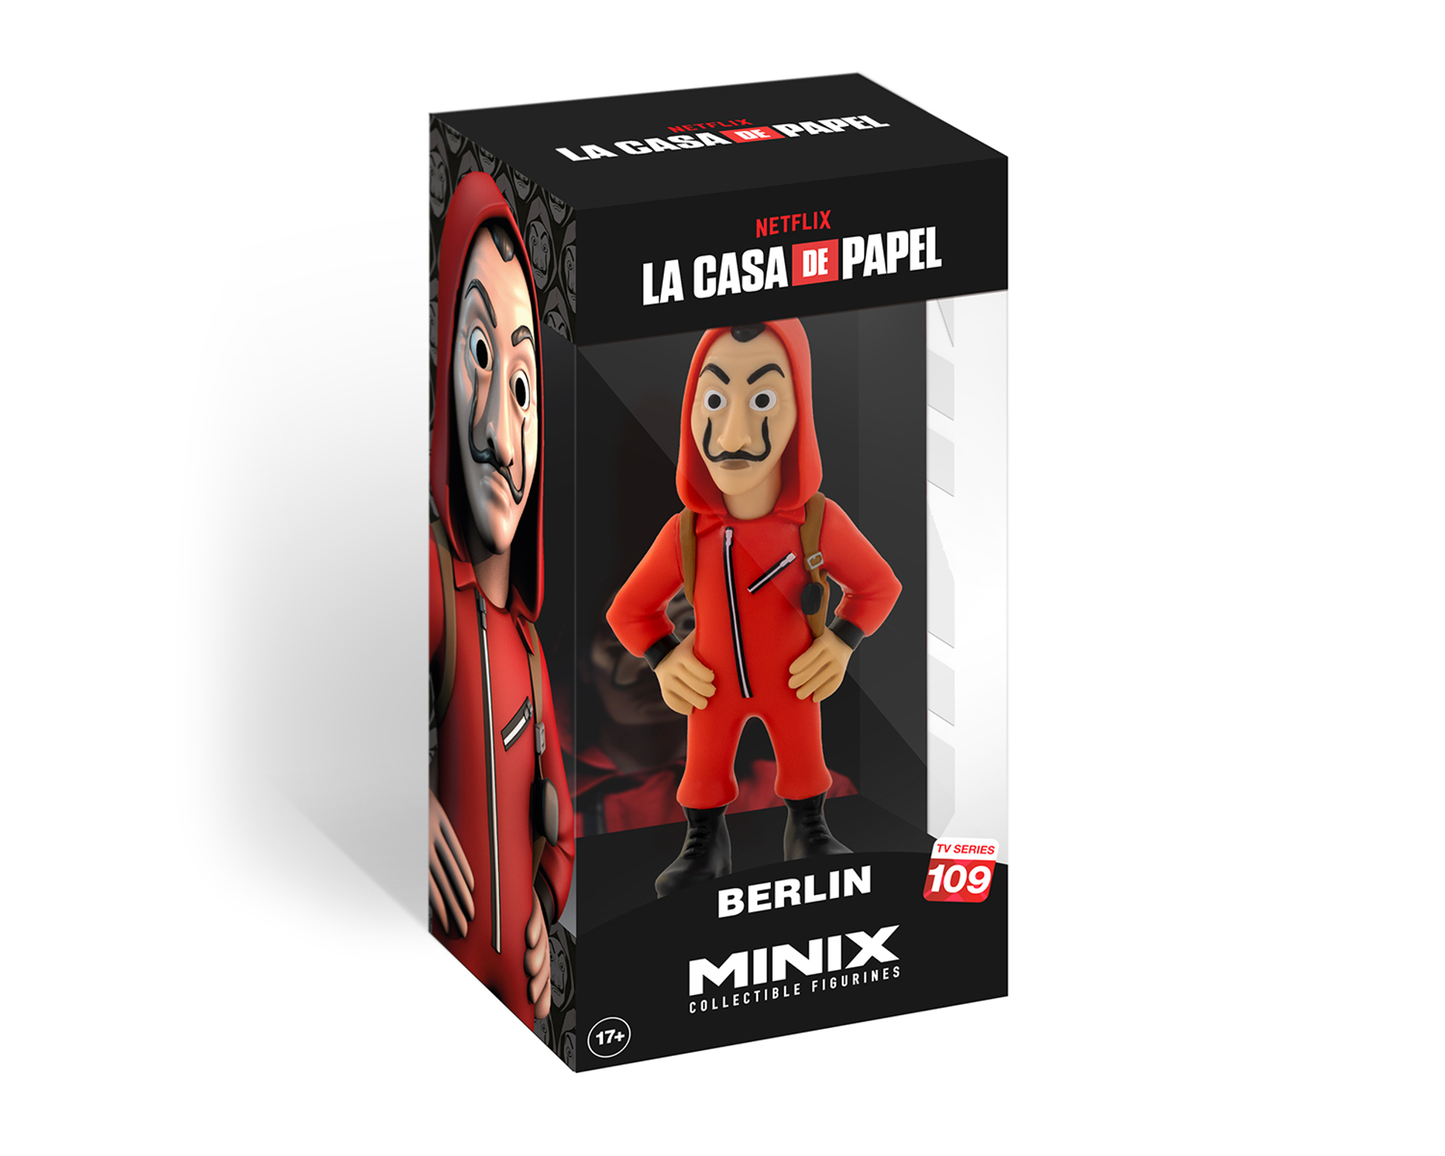 Minix - Netflix - La Casa de Papel - Berlin with mask - Figure 12cm